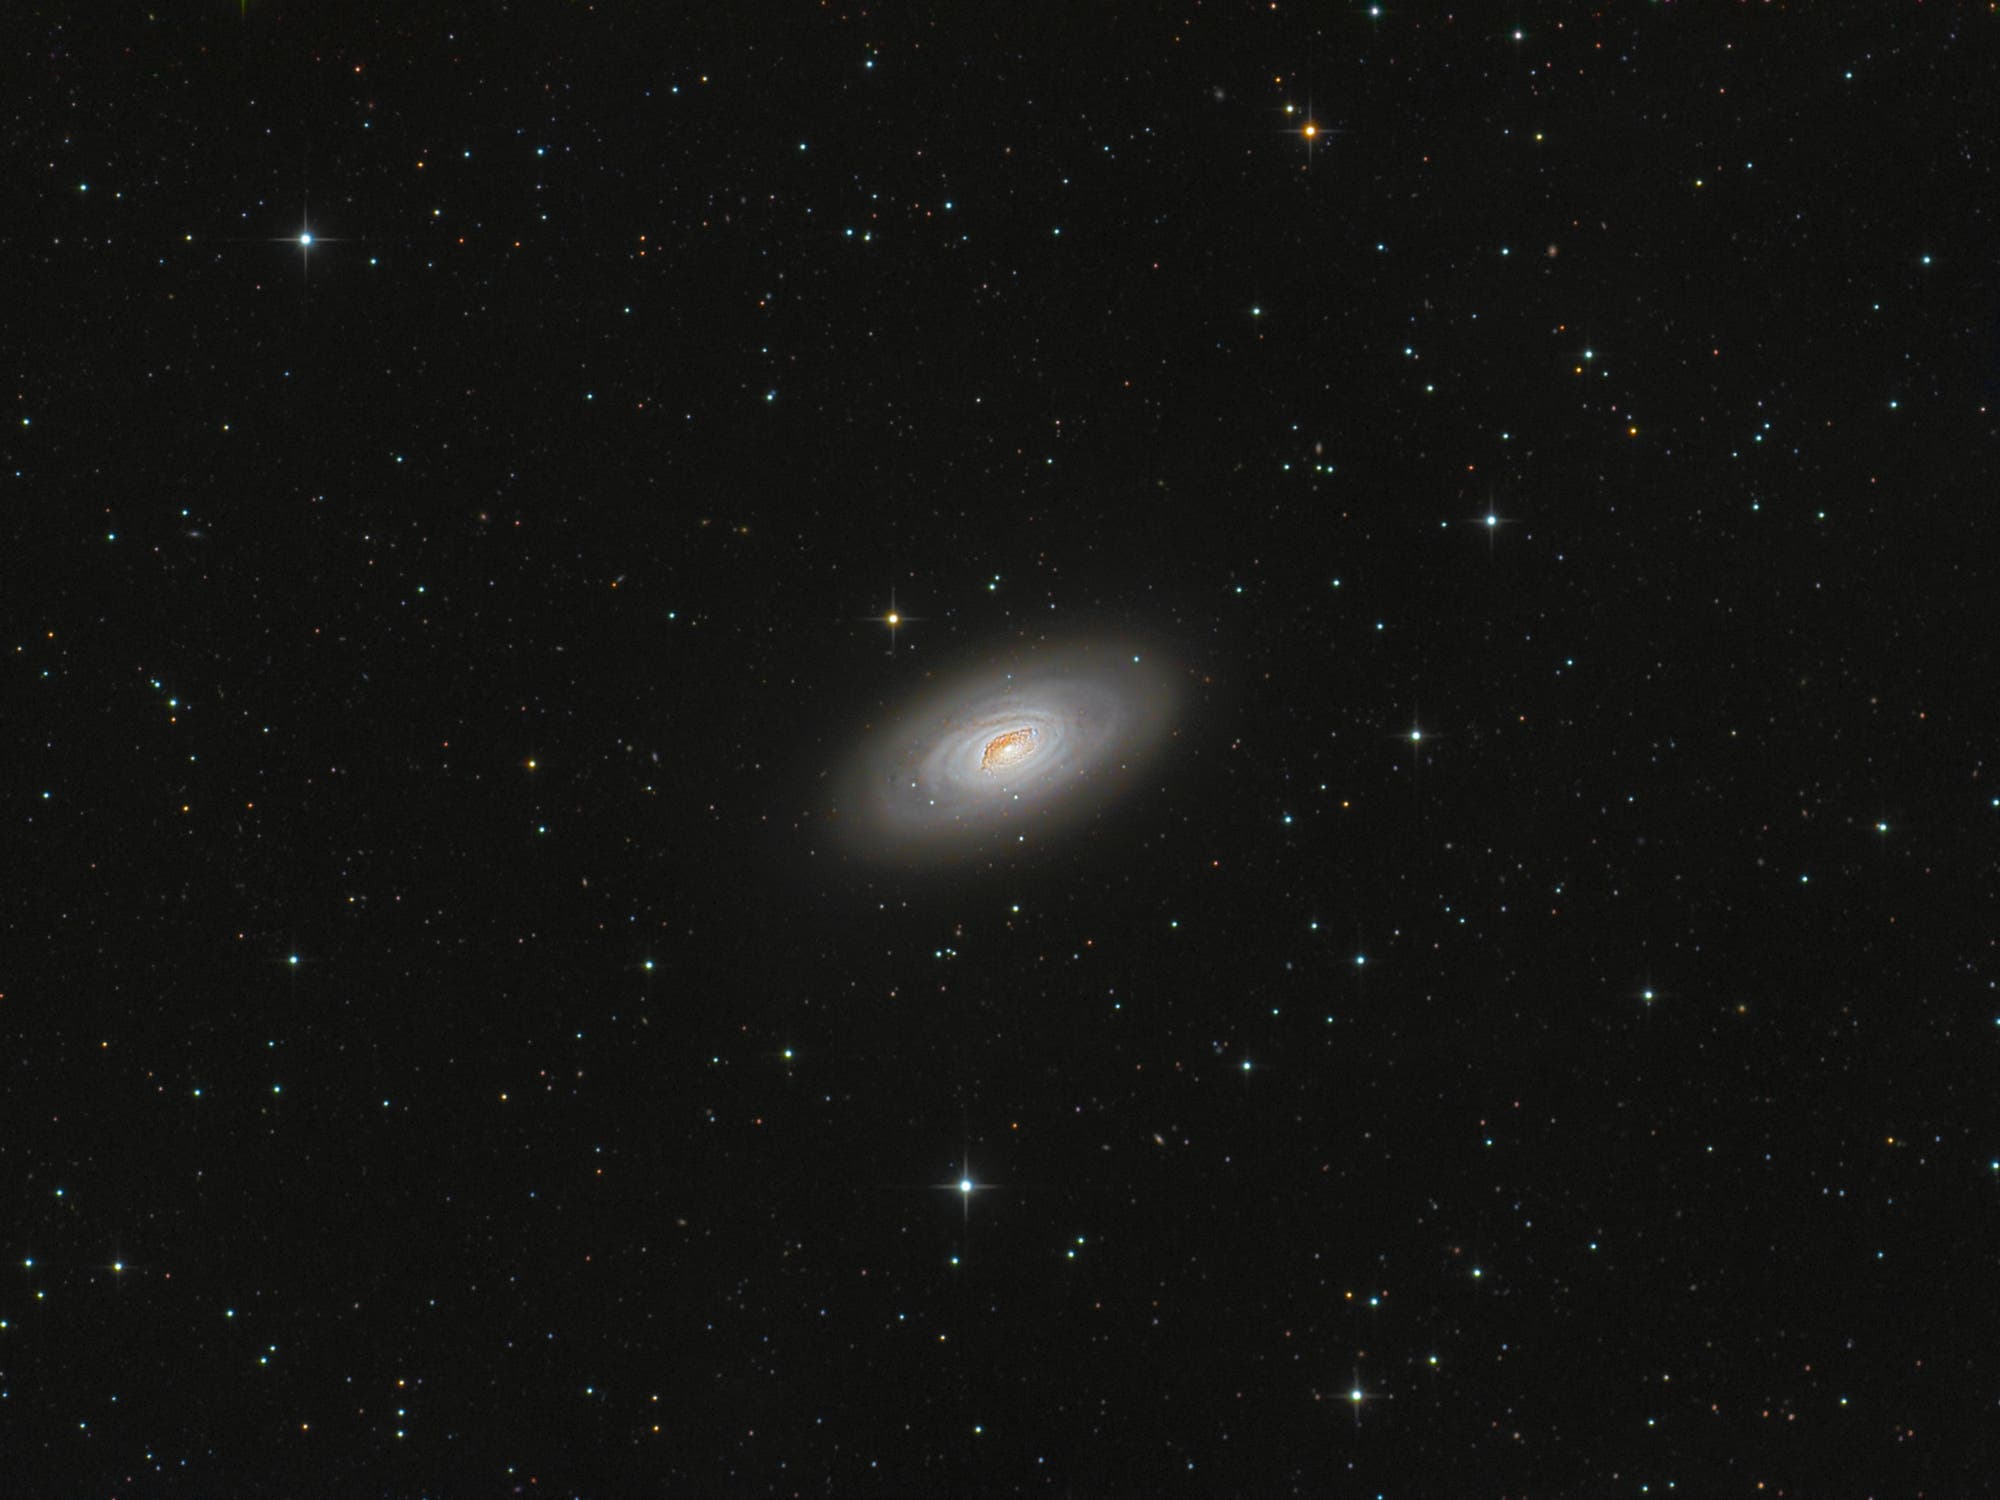 Messier 64